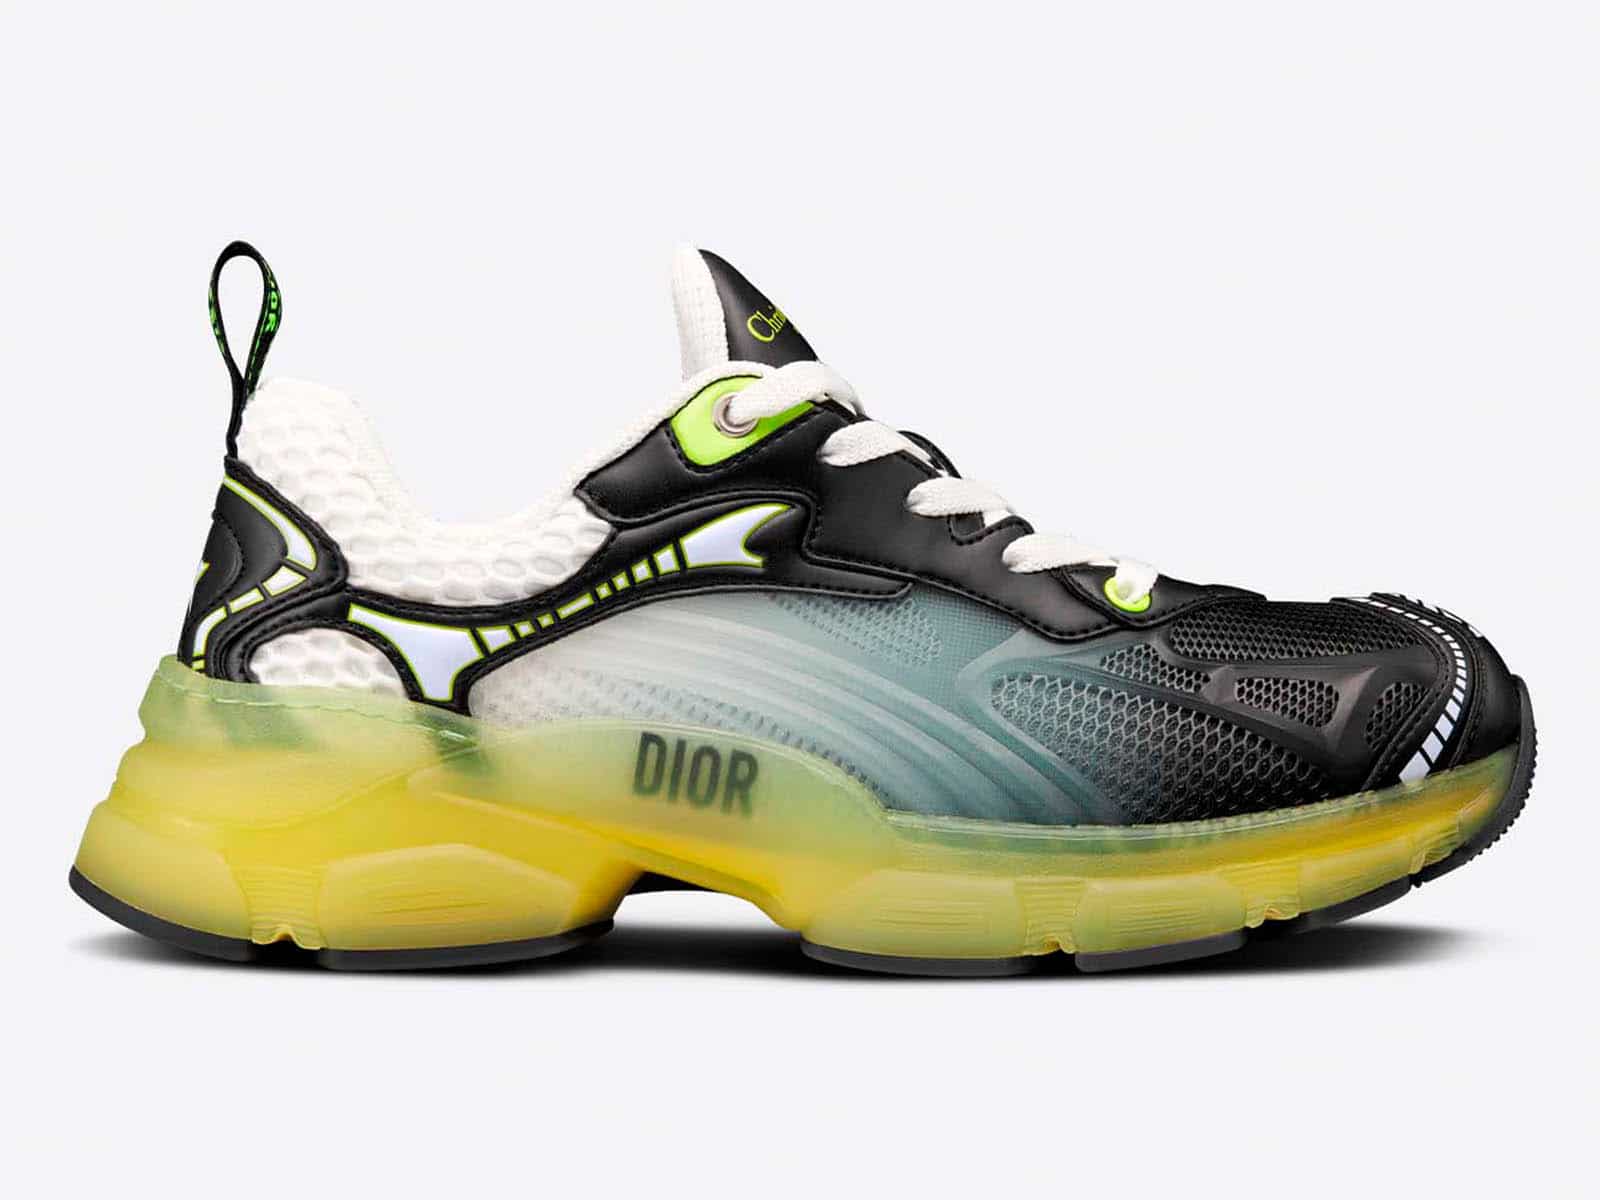 Dior’s “Vibe” sneaker returns in neon yellow gradient